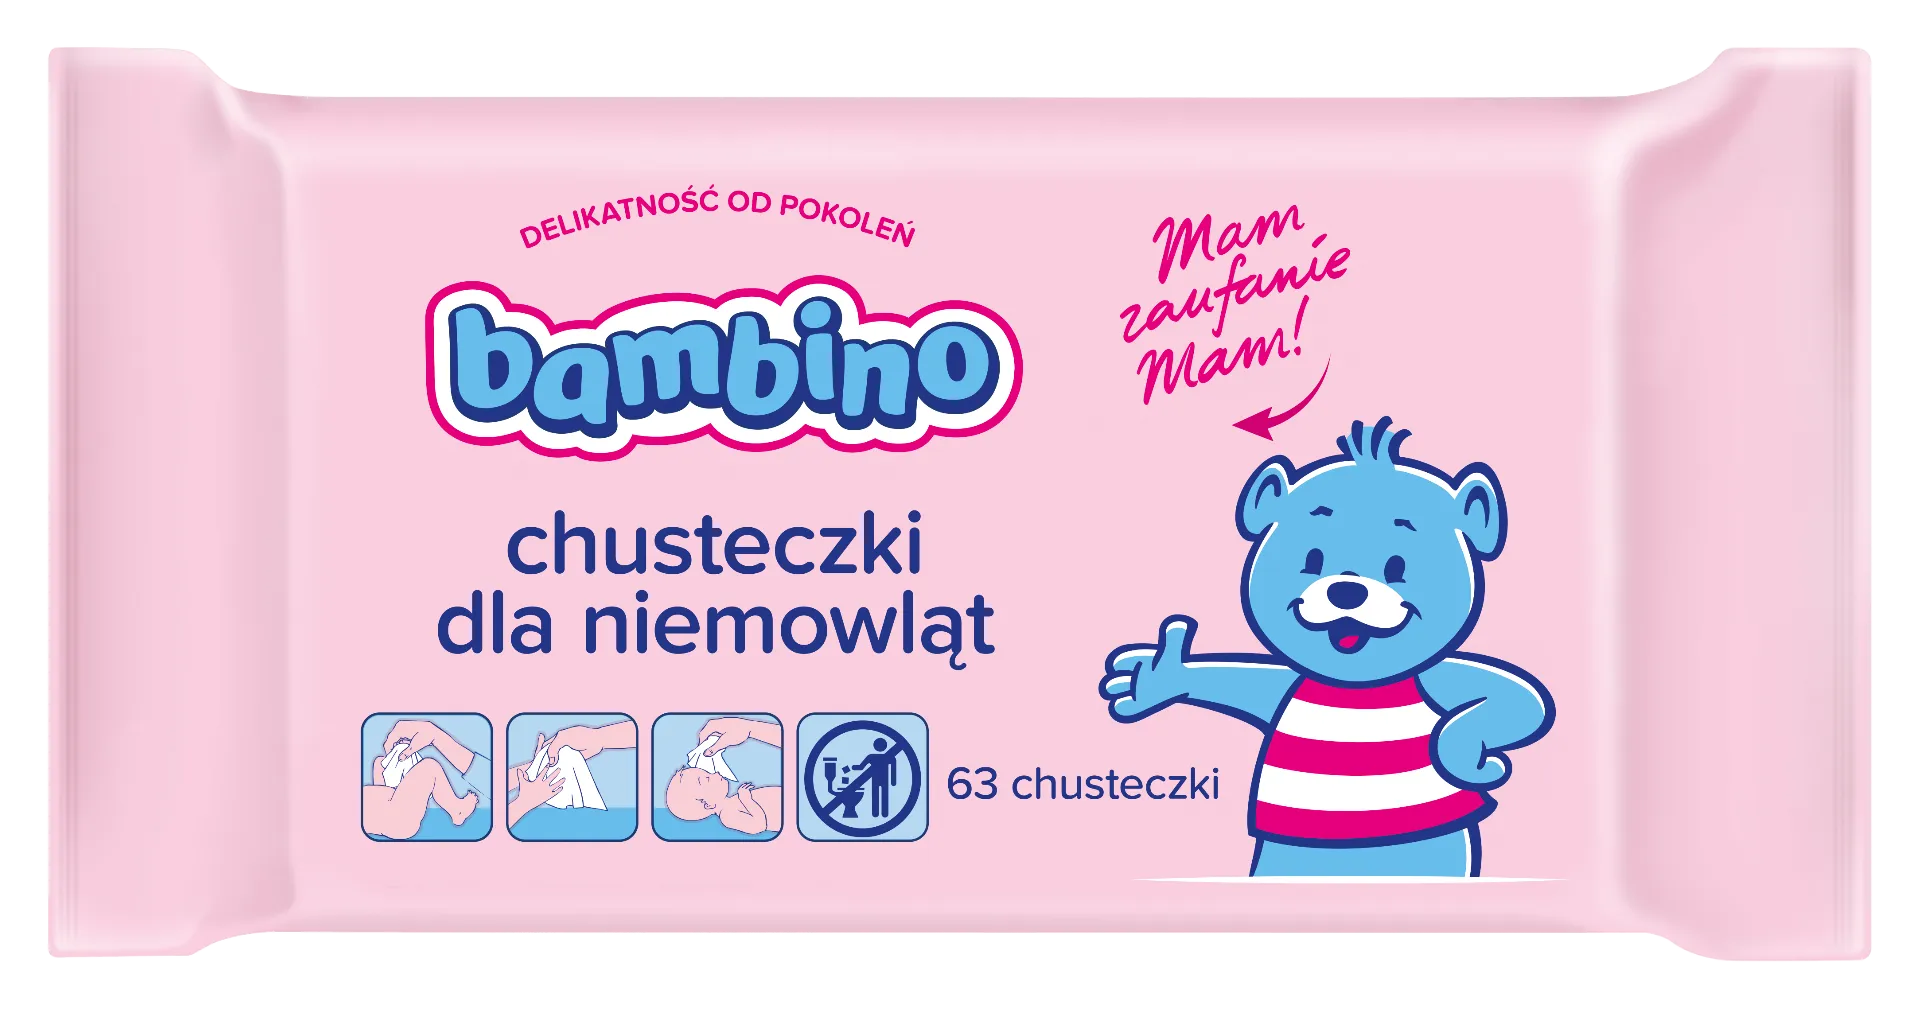 Bambino, chusteczki dla niemowląt, 63 sztuki